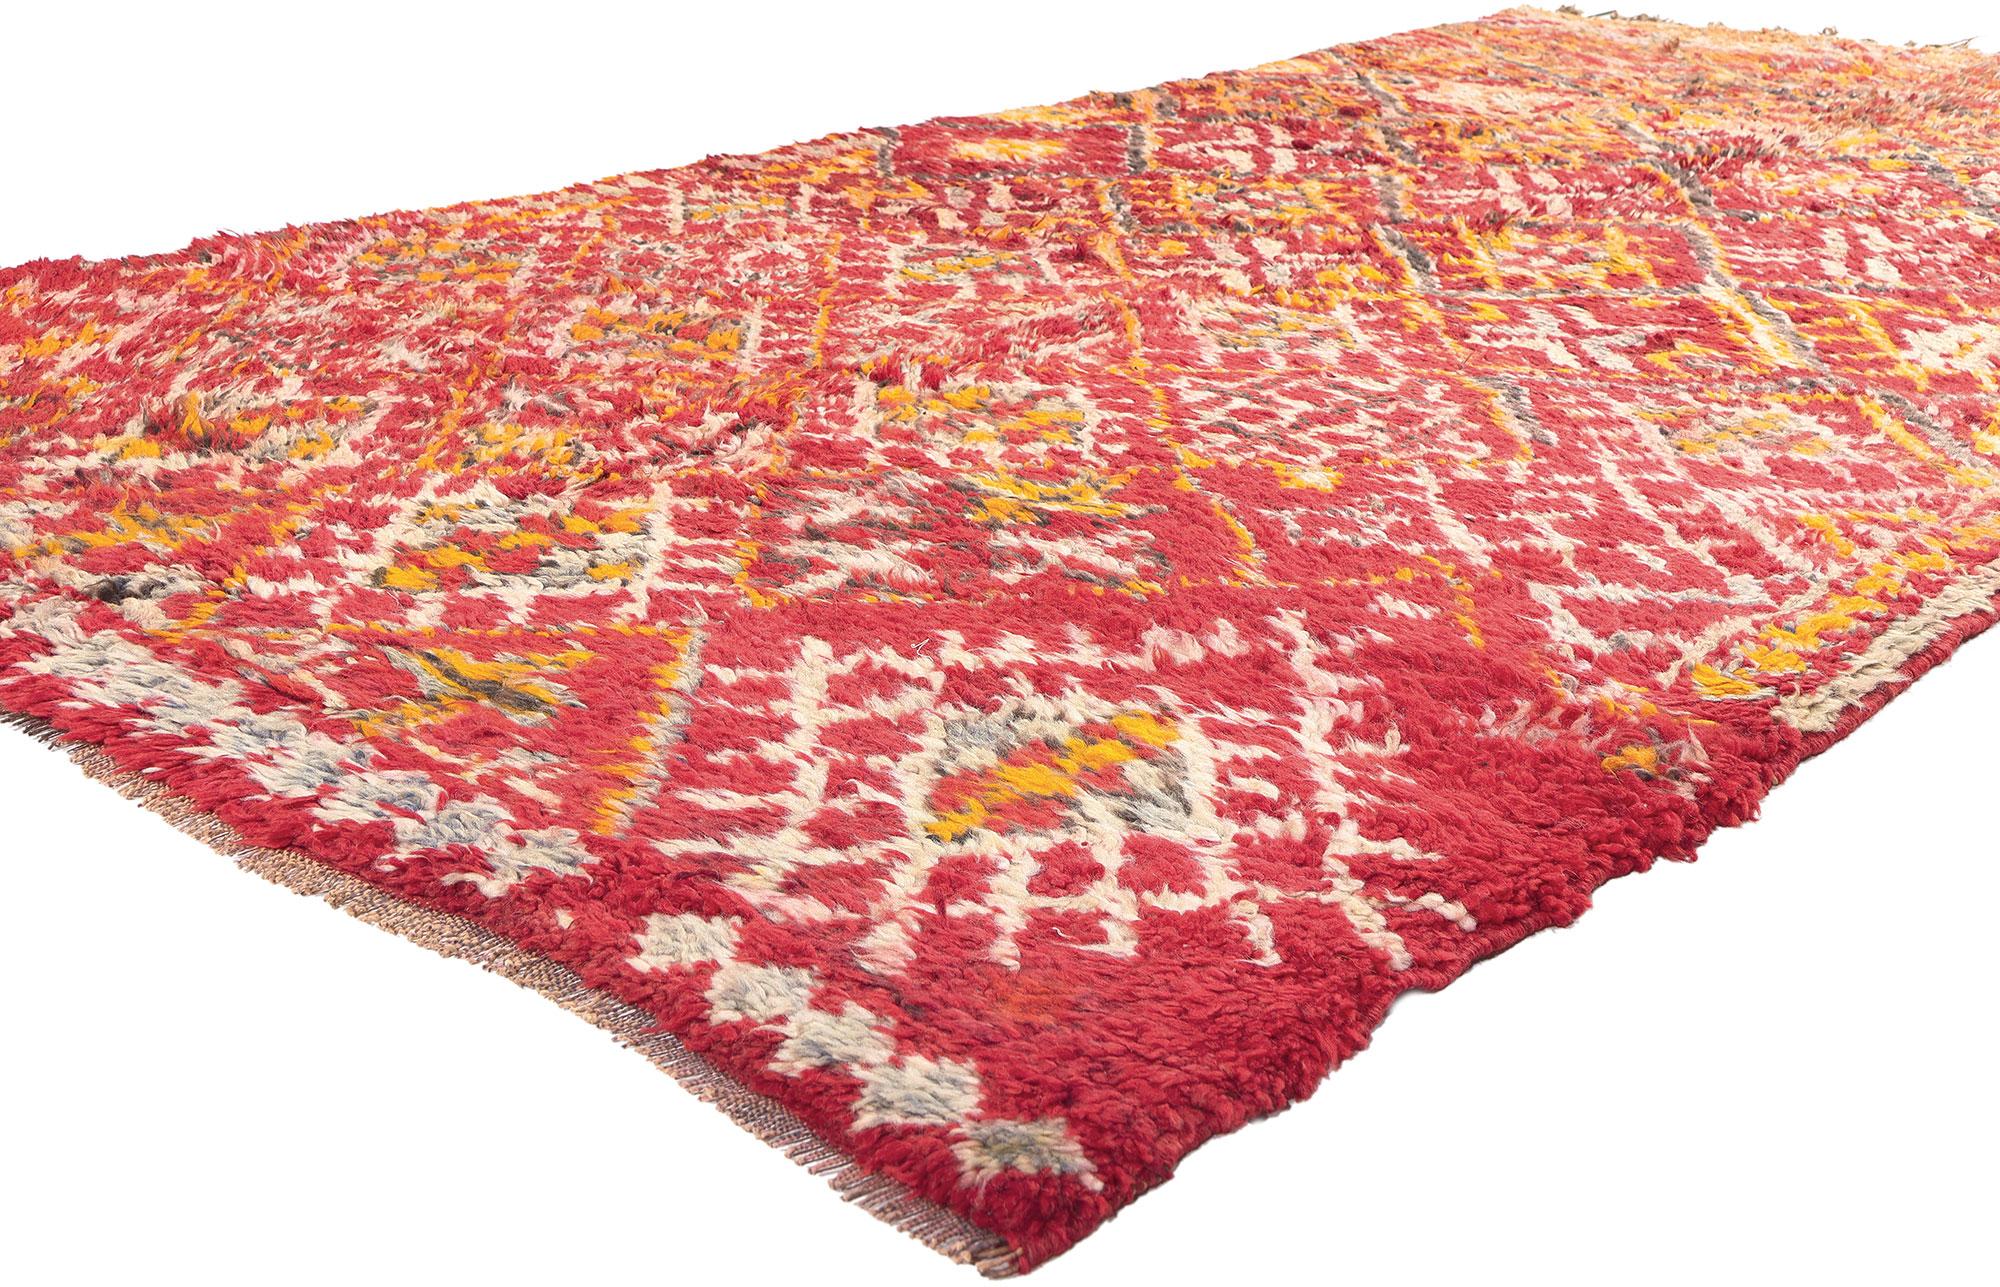 20944 Tapis marocain Beni MGuild rouge vintage, 05'08 x 10'02.  Ce tapis vintage Beni MGuild témoigne de la riche culture de l'artisanat marocain, méticuleusement tissé à la main par les artisans qualifiés de la tribu Beni MGuild, un sous-ensemble